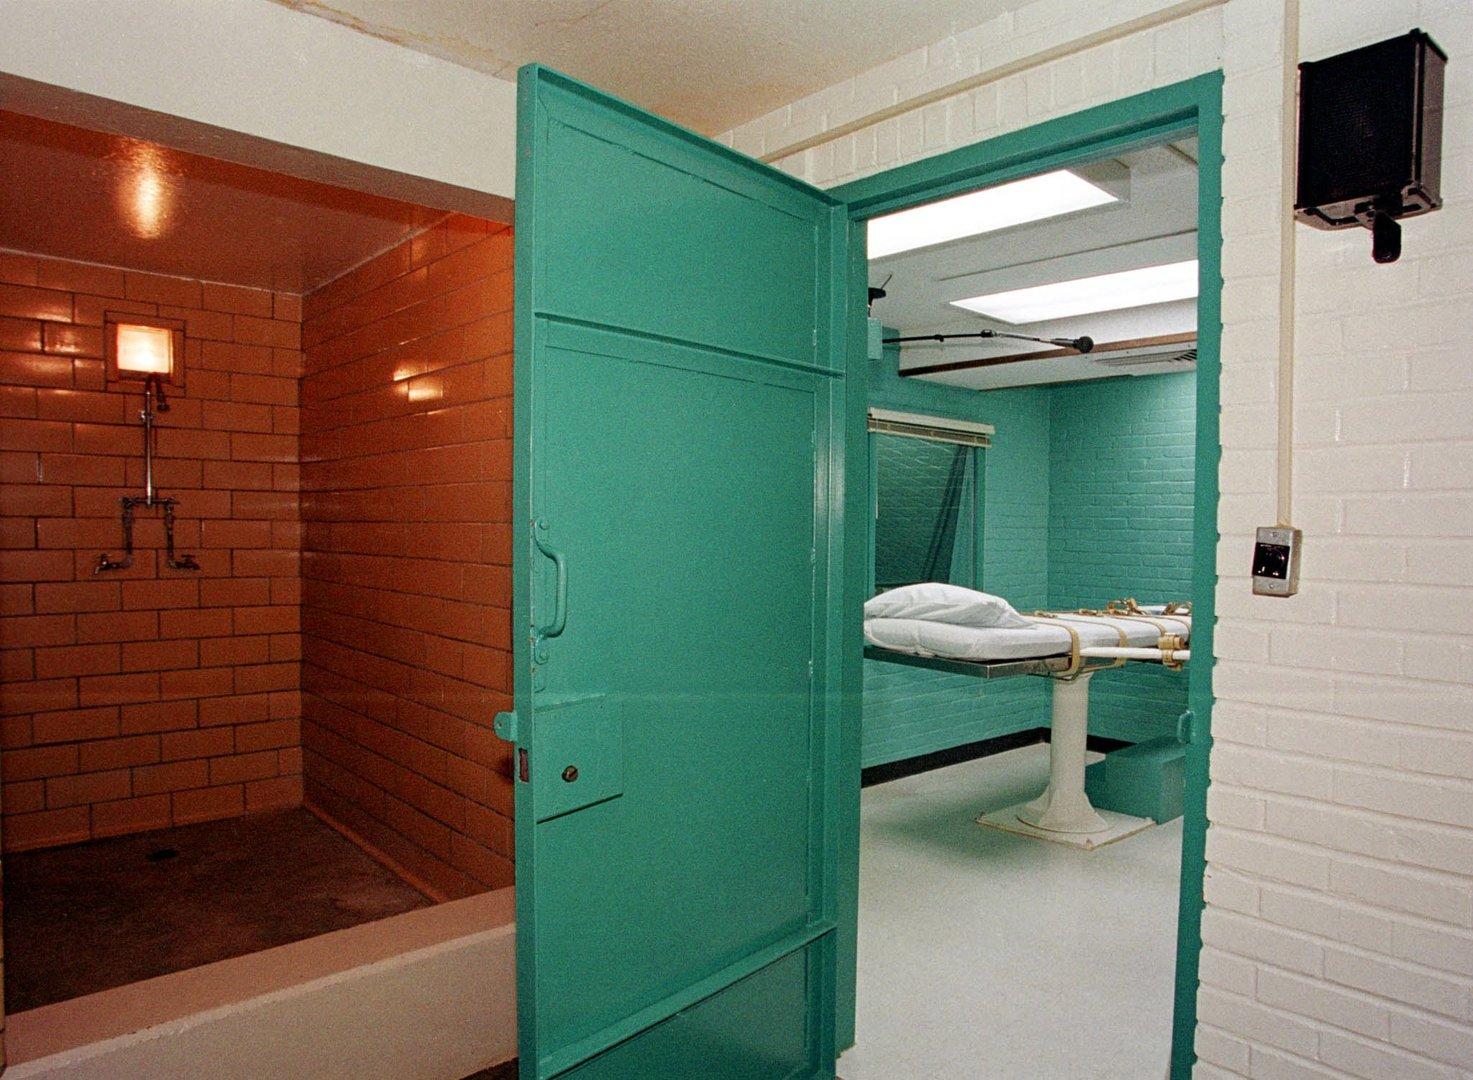 Experten warnen vor US-Hinrichtung mit Stickstoff: Könnte Folter ähneln